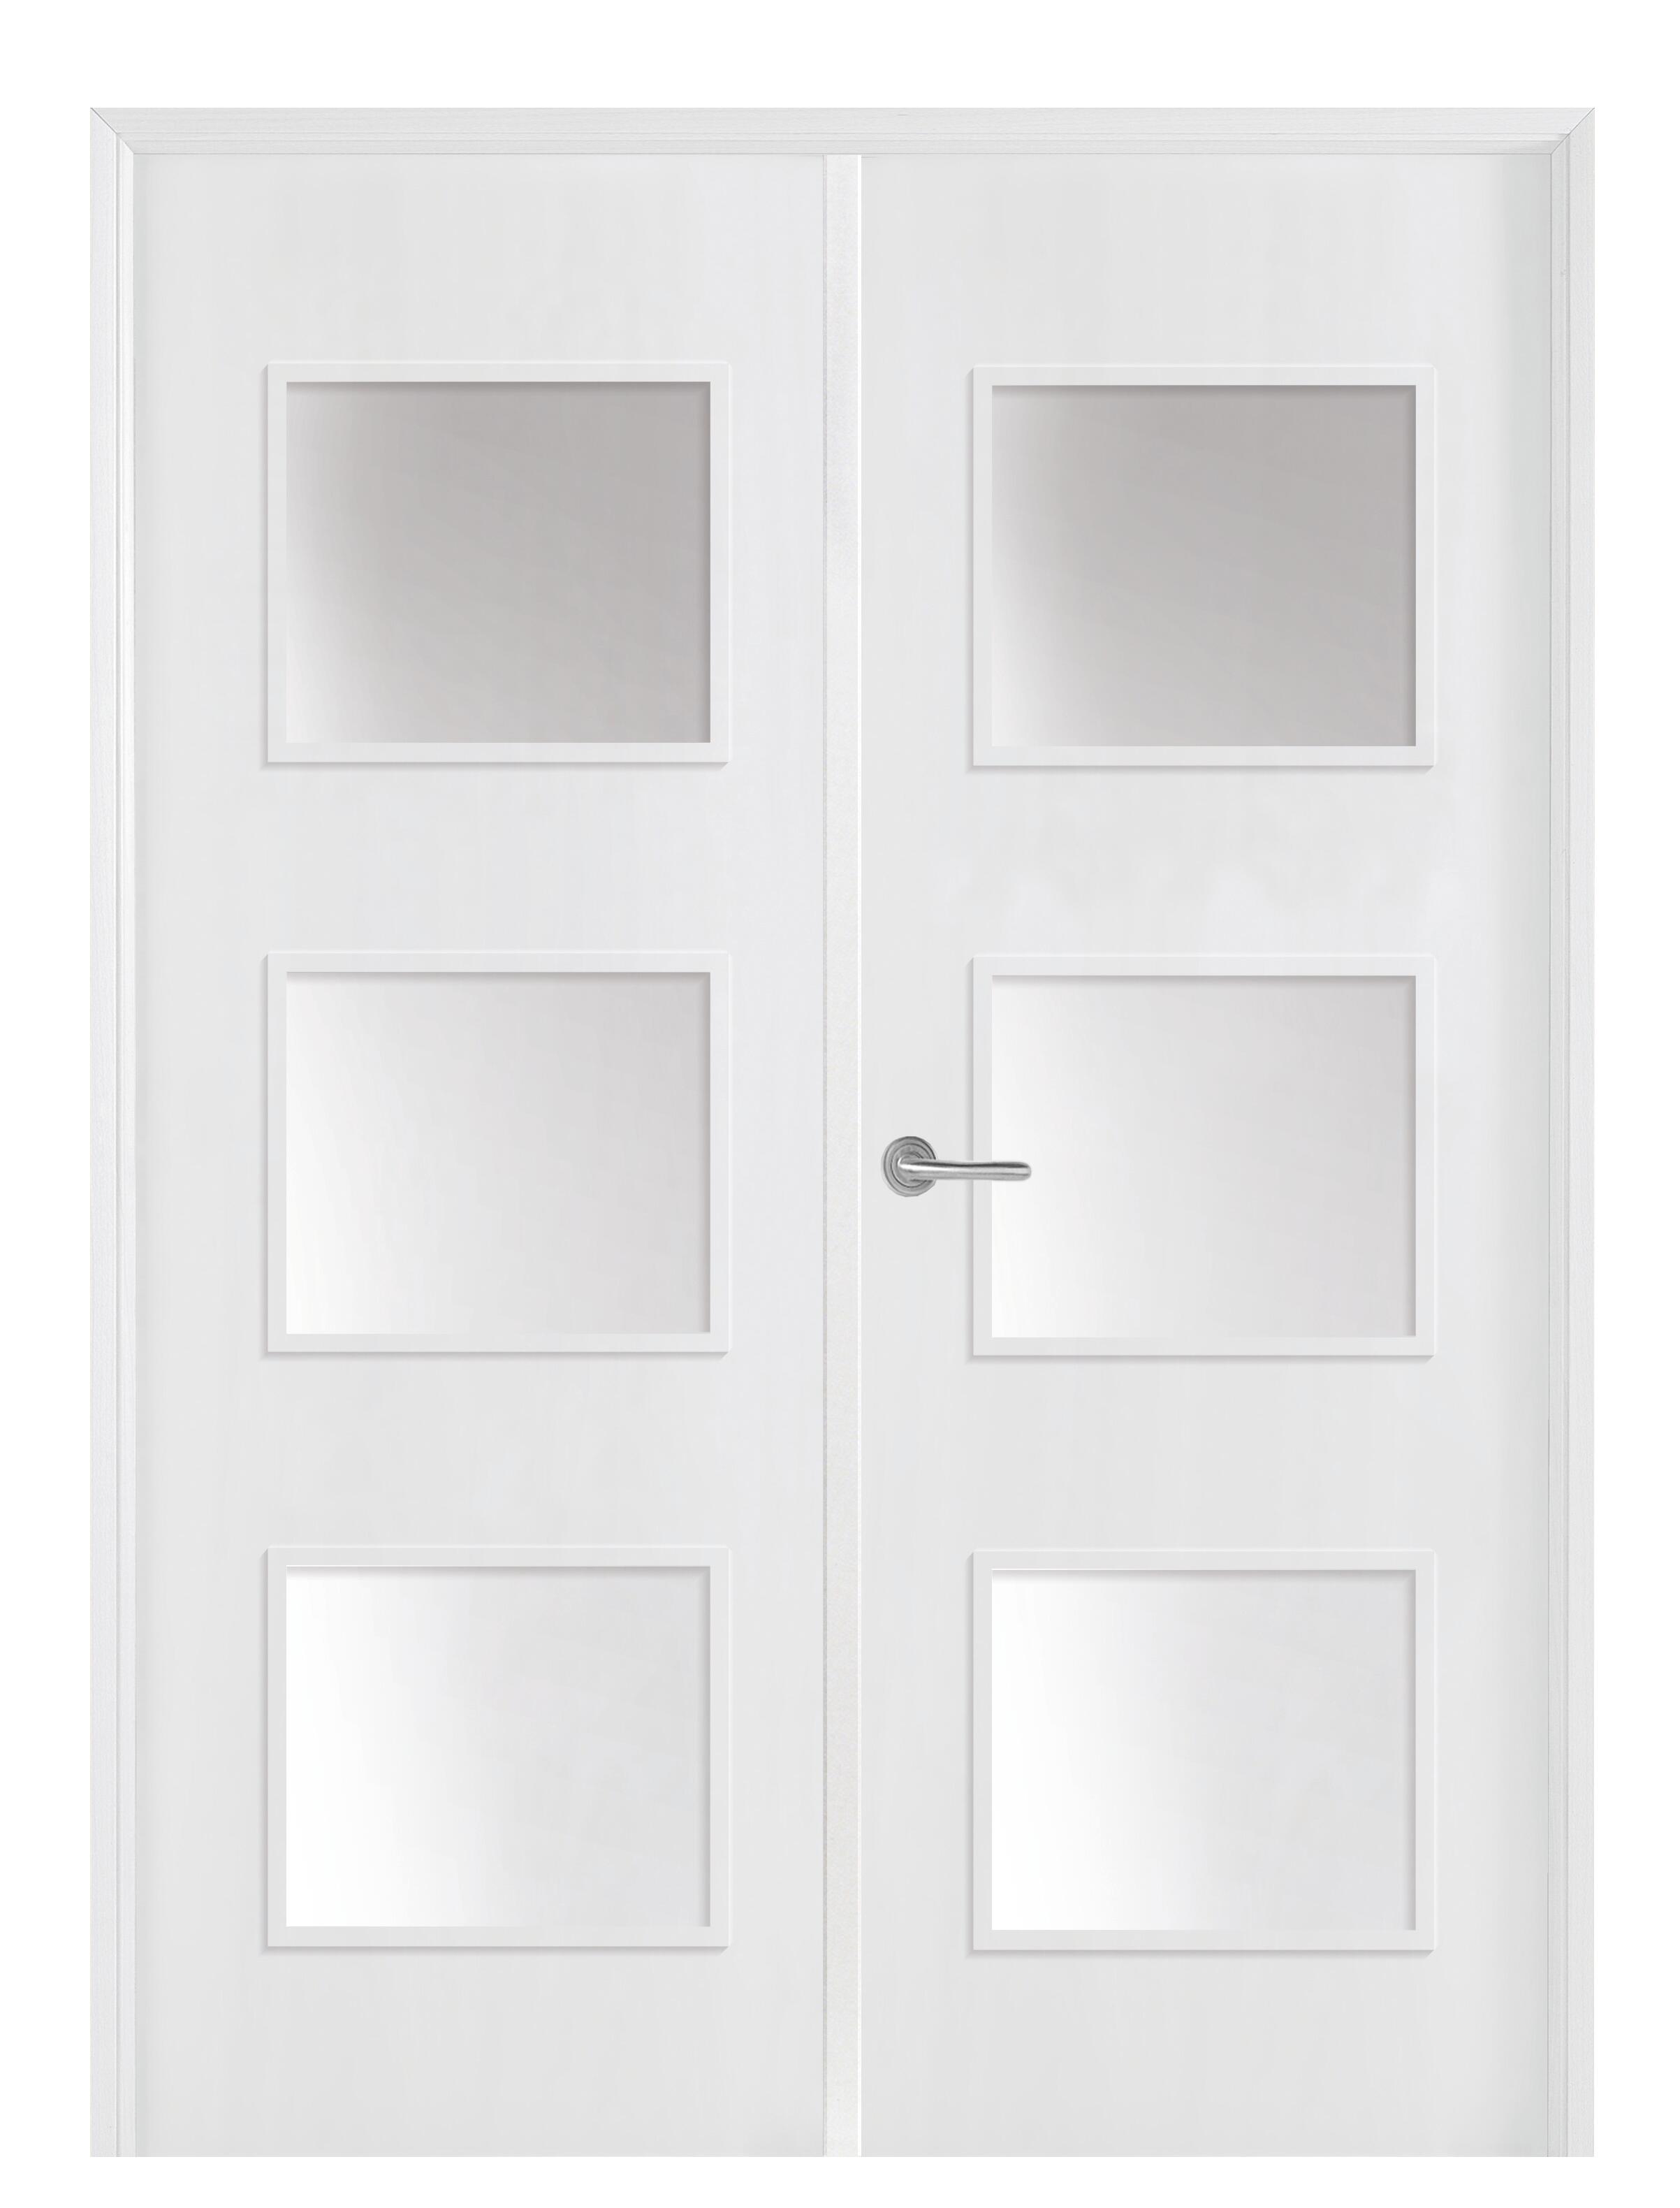 Puerta doble con cristal bari plus blanca 125 cm (62+62) i